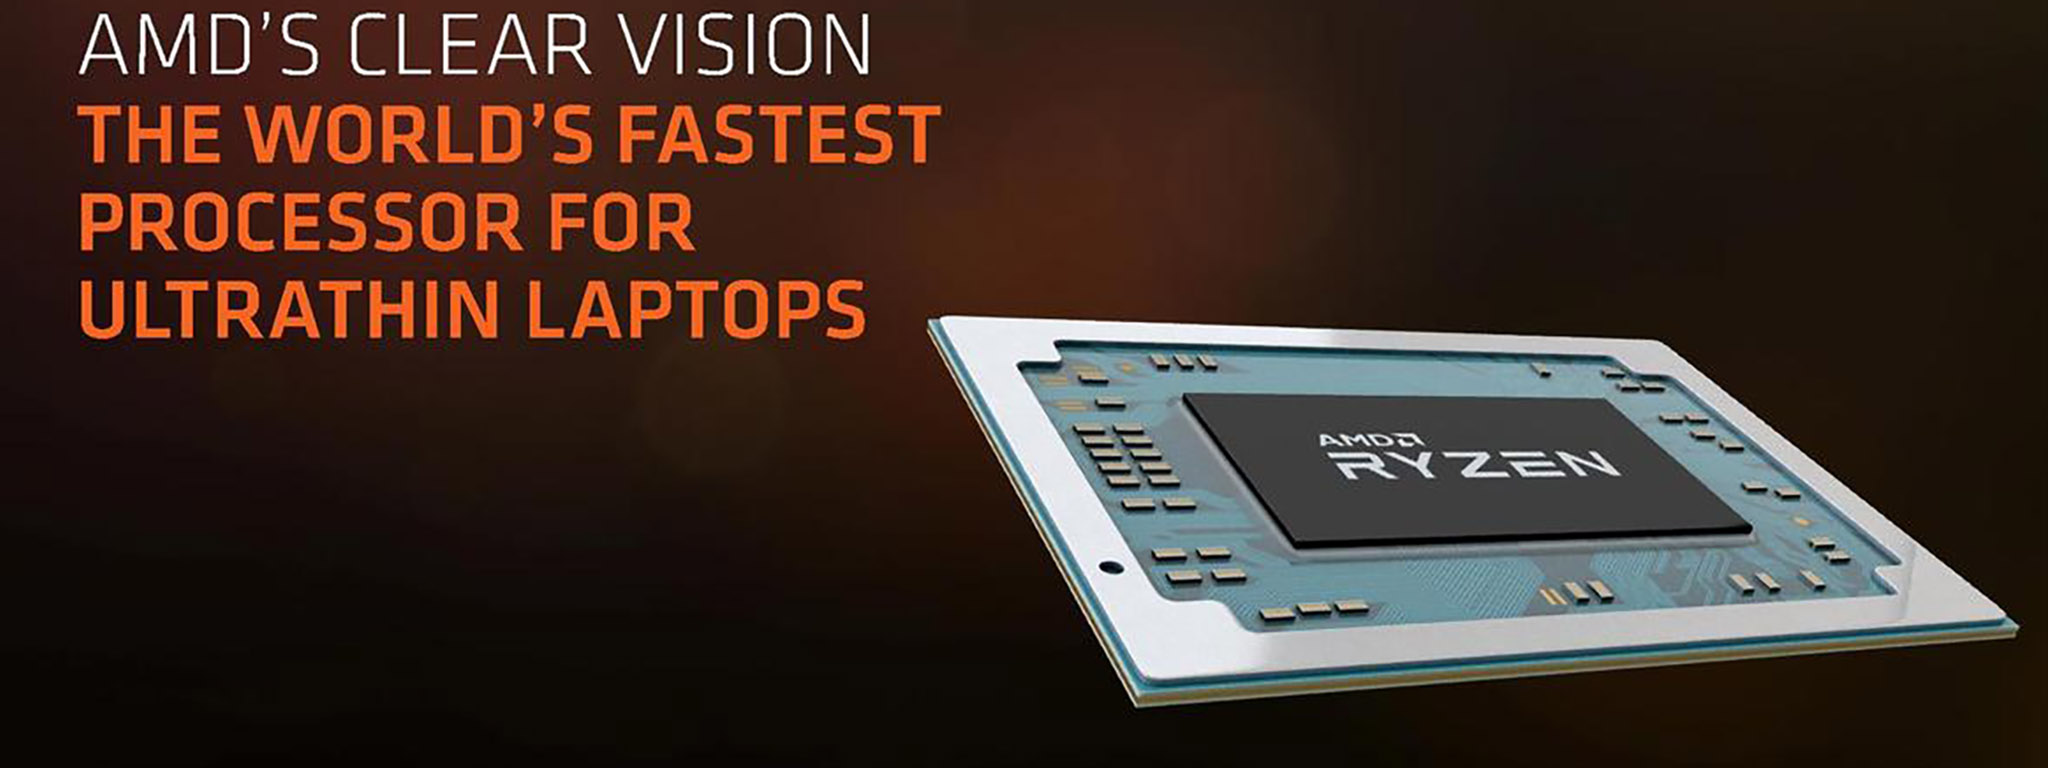 AMD công bố Ryzen Mobile: 2 phiên bản APU cho laptop, 4 nhân 8 luồng, TDP 15 W, tích hợp Radeon Vega